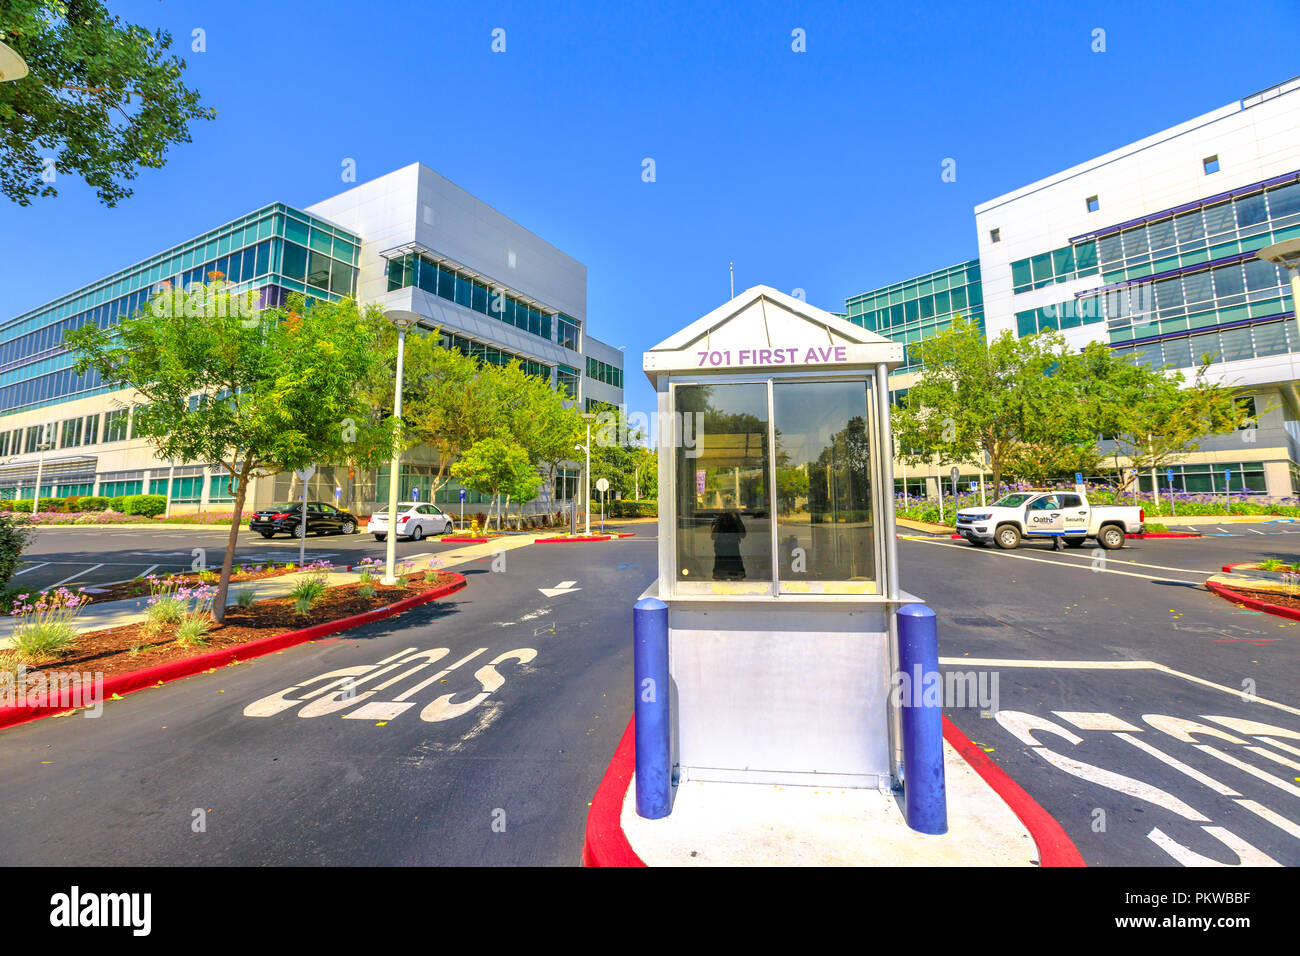 Sunnyvale, Kalifornien, USA - 12. August 2018: Yahoo Security Checkpoint bei Yahoo Inc Sitz in 701 Erste Ave, Silicon Valley, CA. Yahoo ist einer der wichtigsten Suchmaschine Portale. Stockfoto